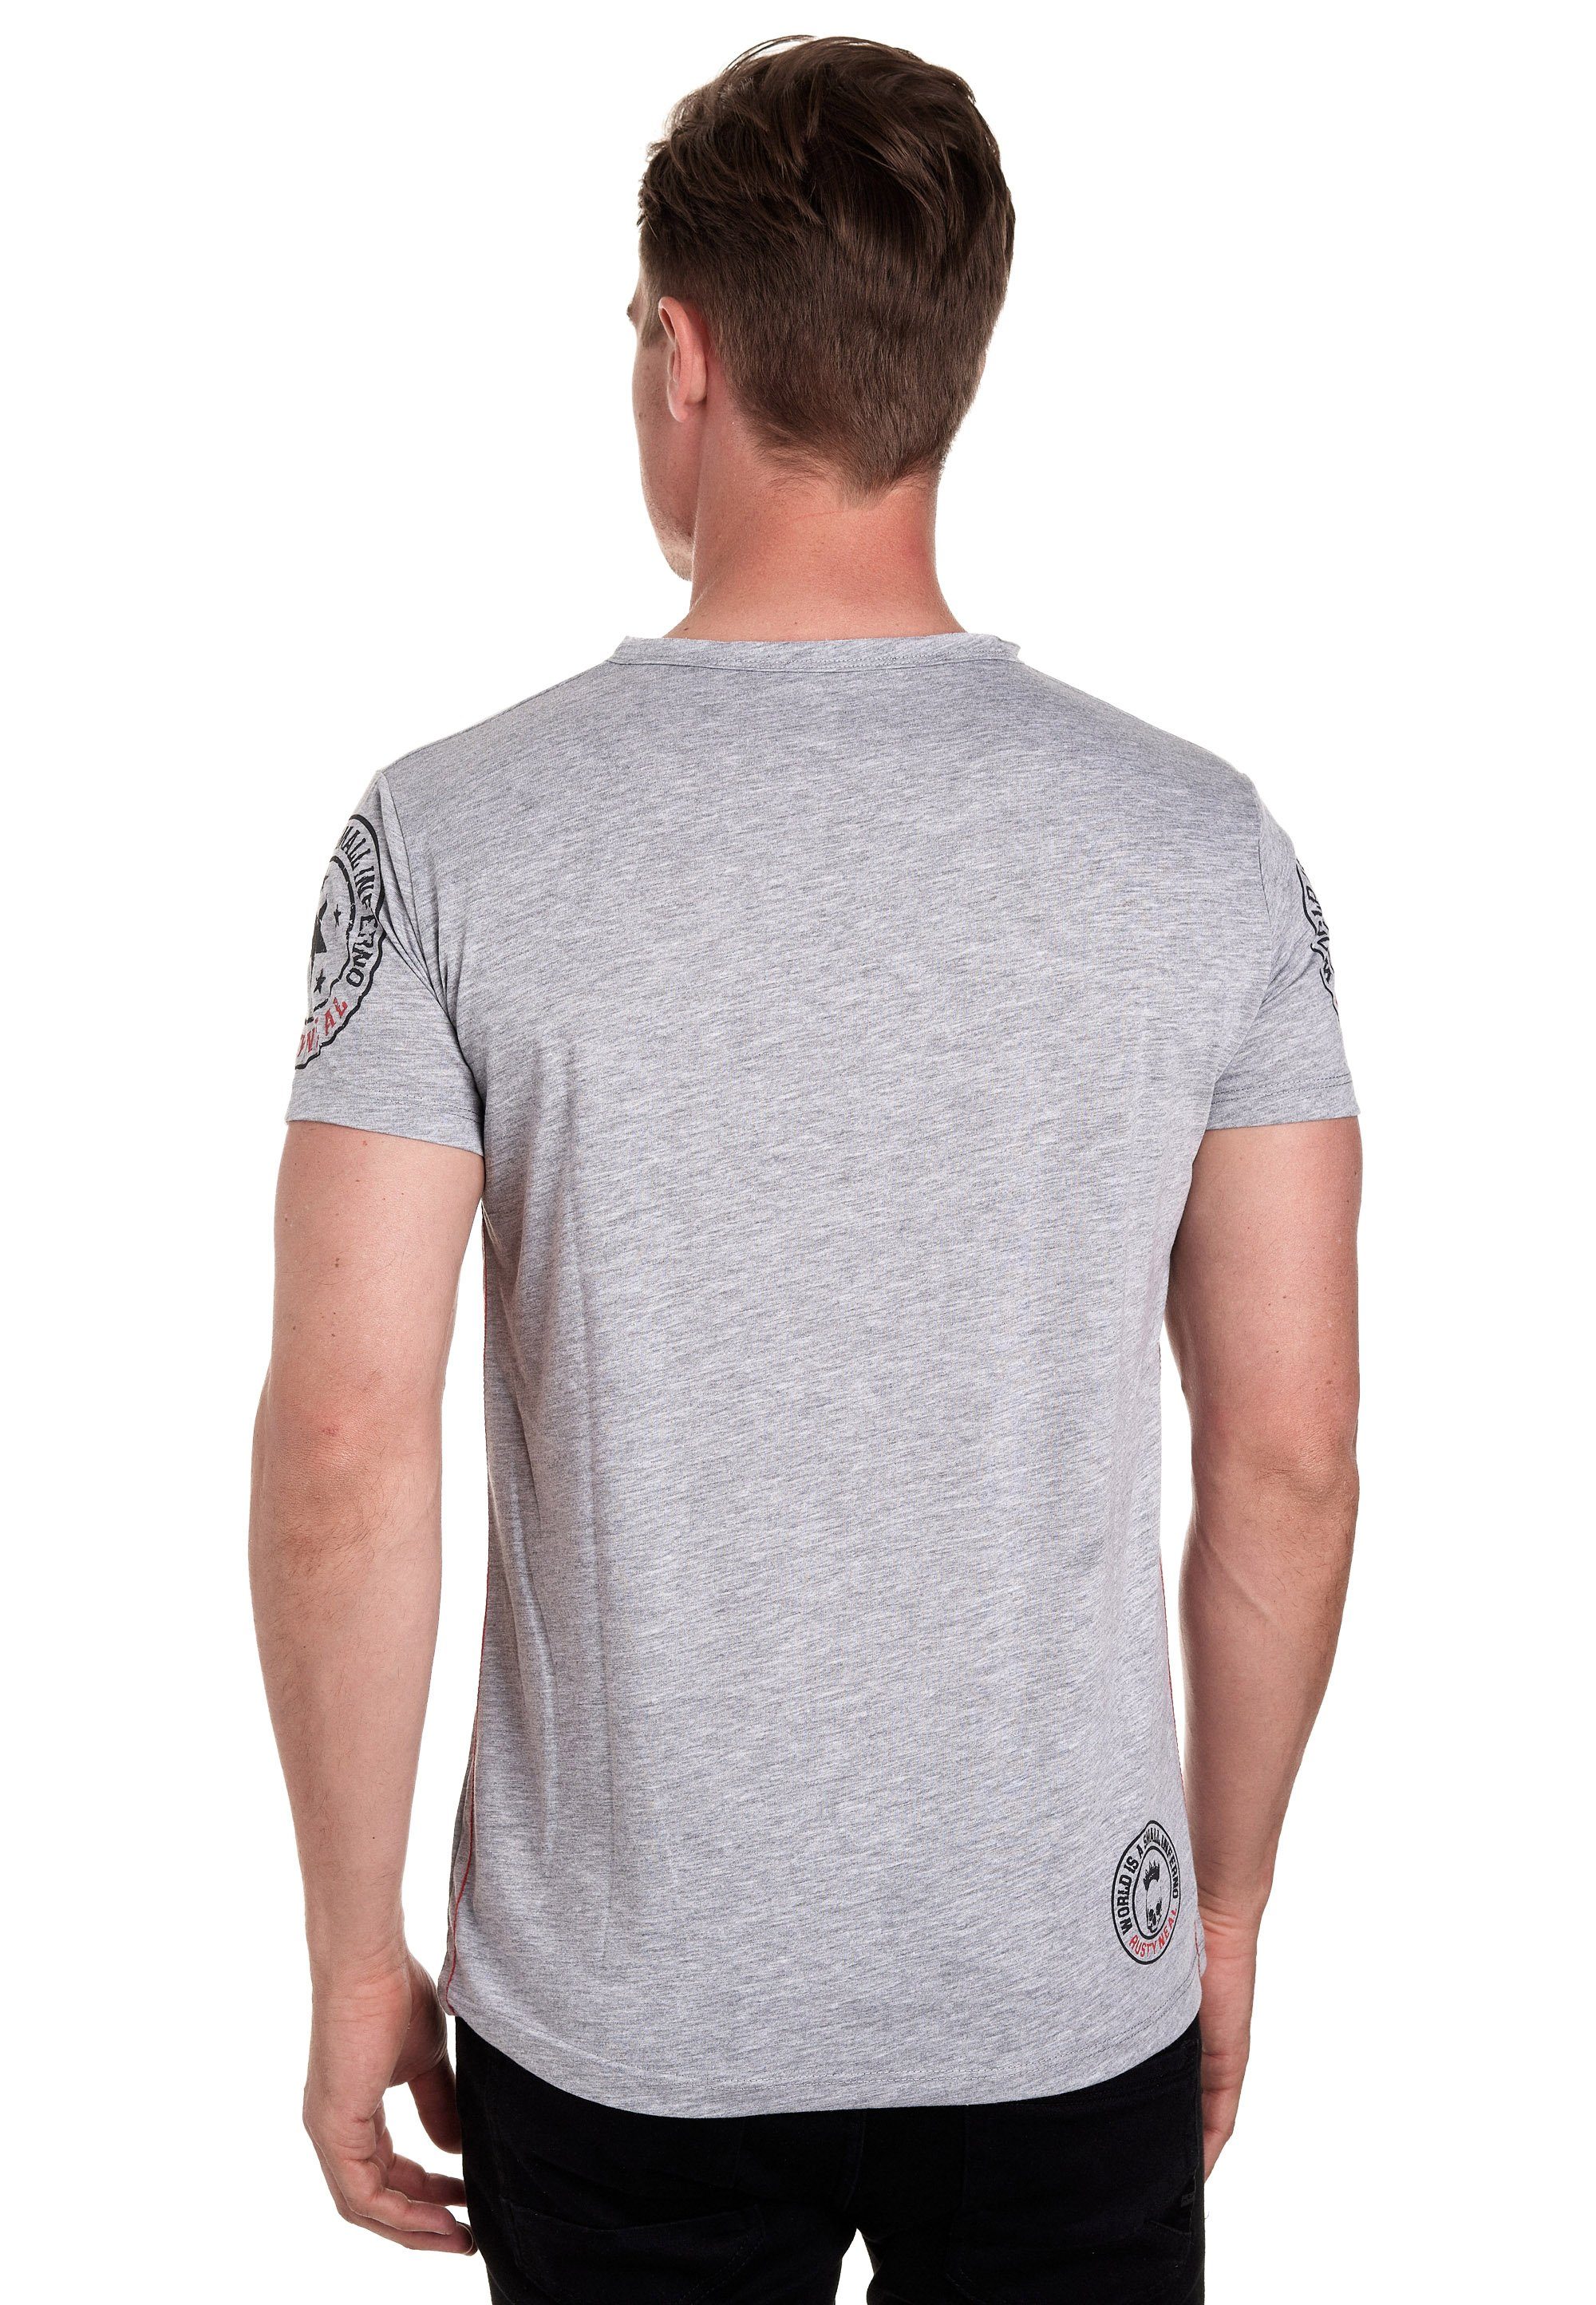 Rusty Neal T-Shirt mit seitlicher grau Knopfleiste